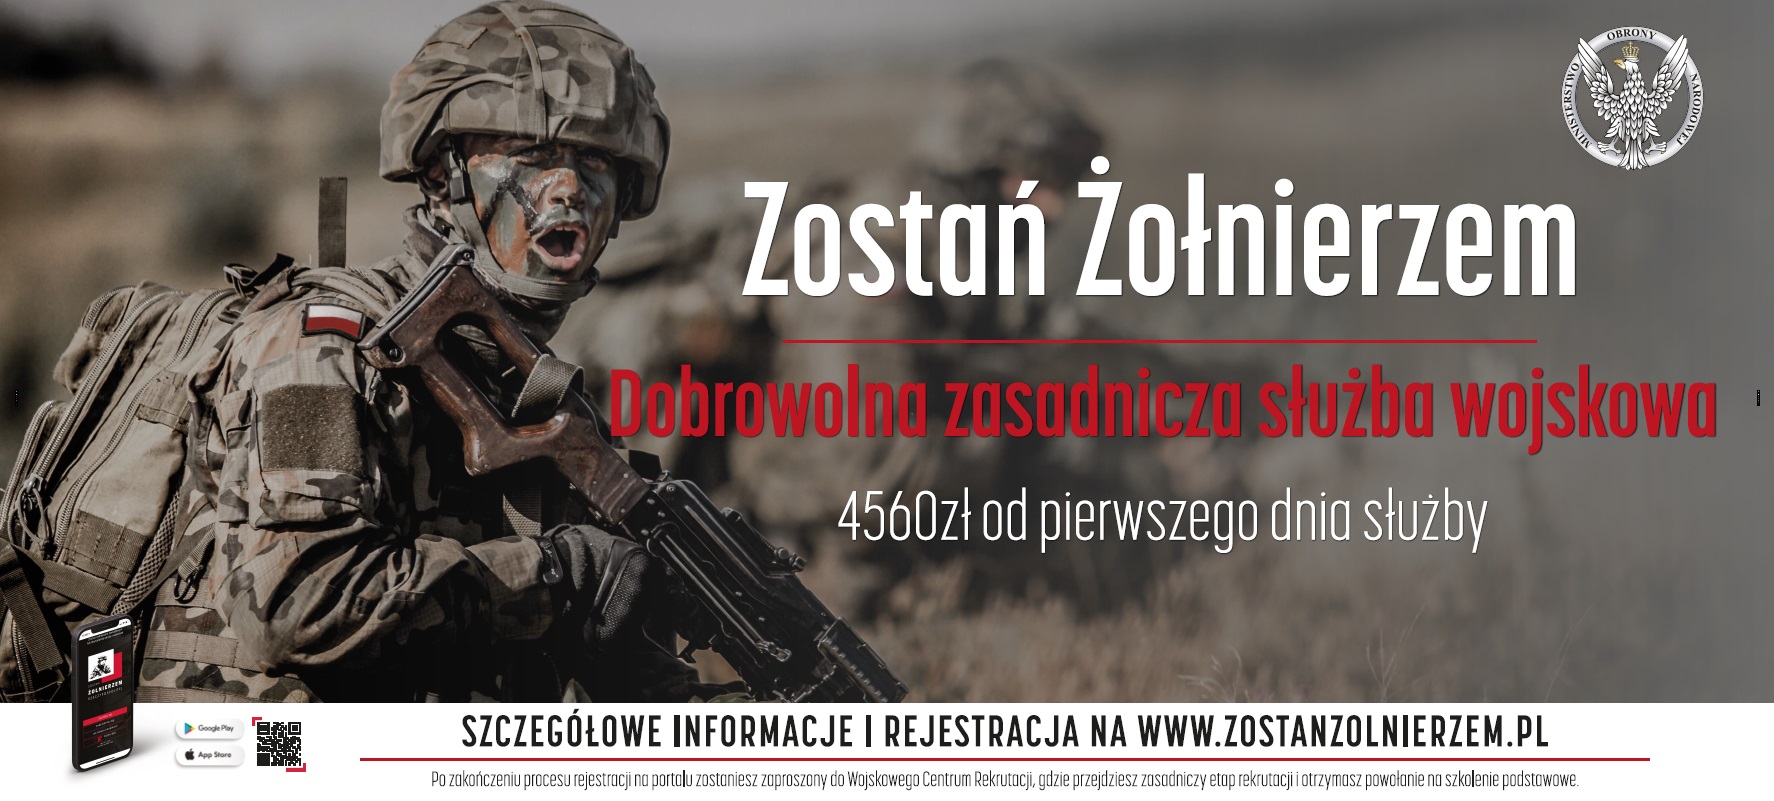 informacja dobrowolnej zasadniczej służbie wojskowej; na obrazie żołnierz w umundurowaniu bojowym